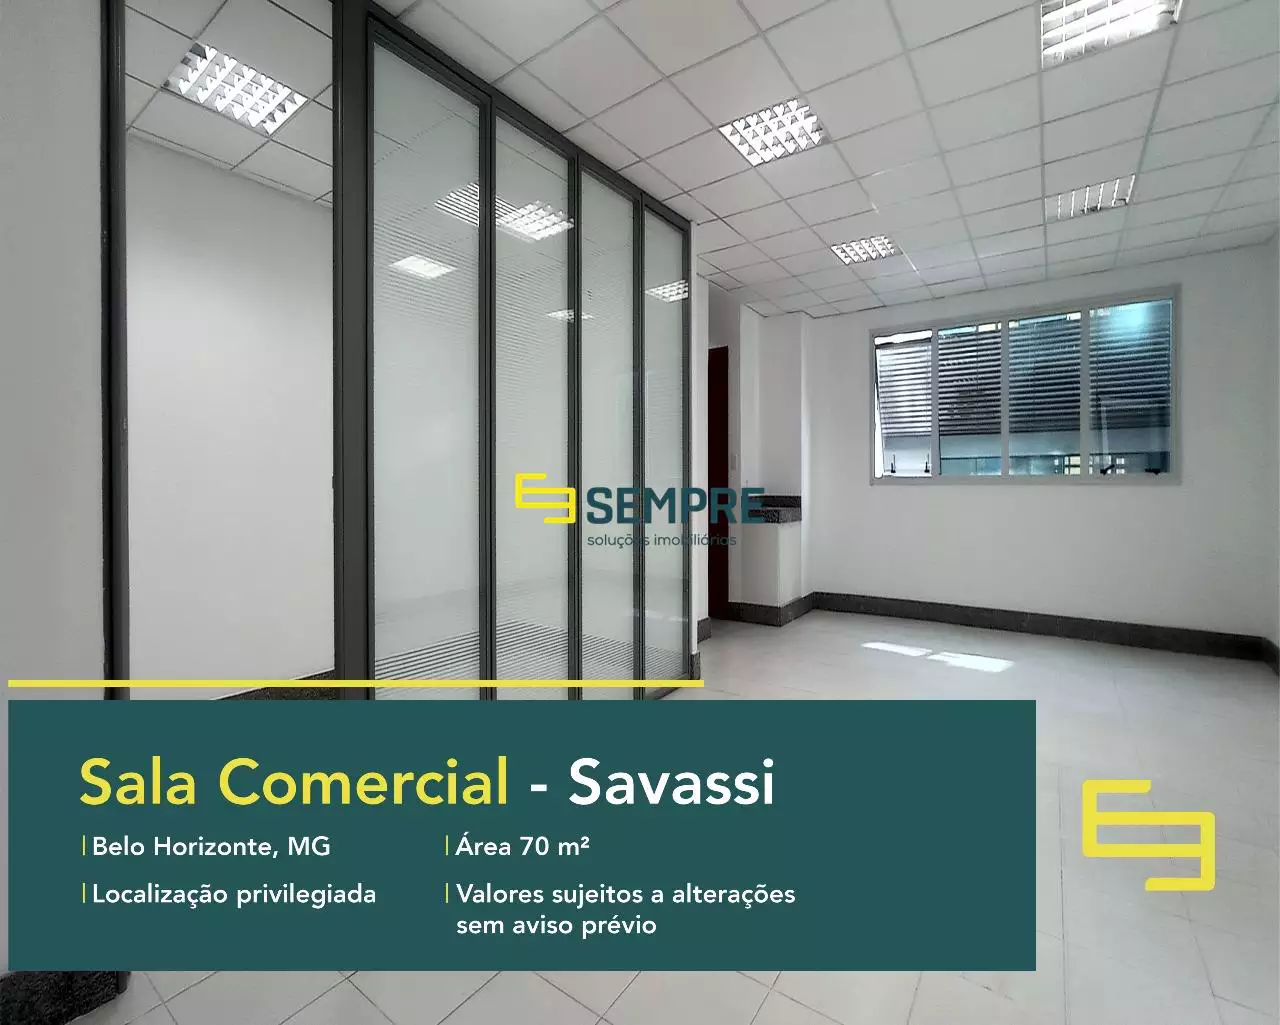 Venda de sala comercial na Savassi em Belo Horizonte, em excelente localização. O estabelecimento comercial conta com área de 70 m².